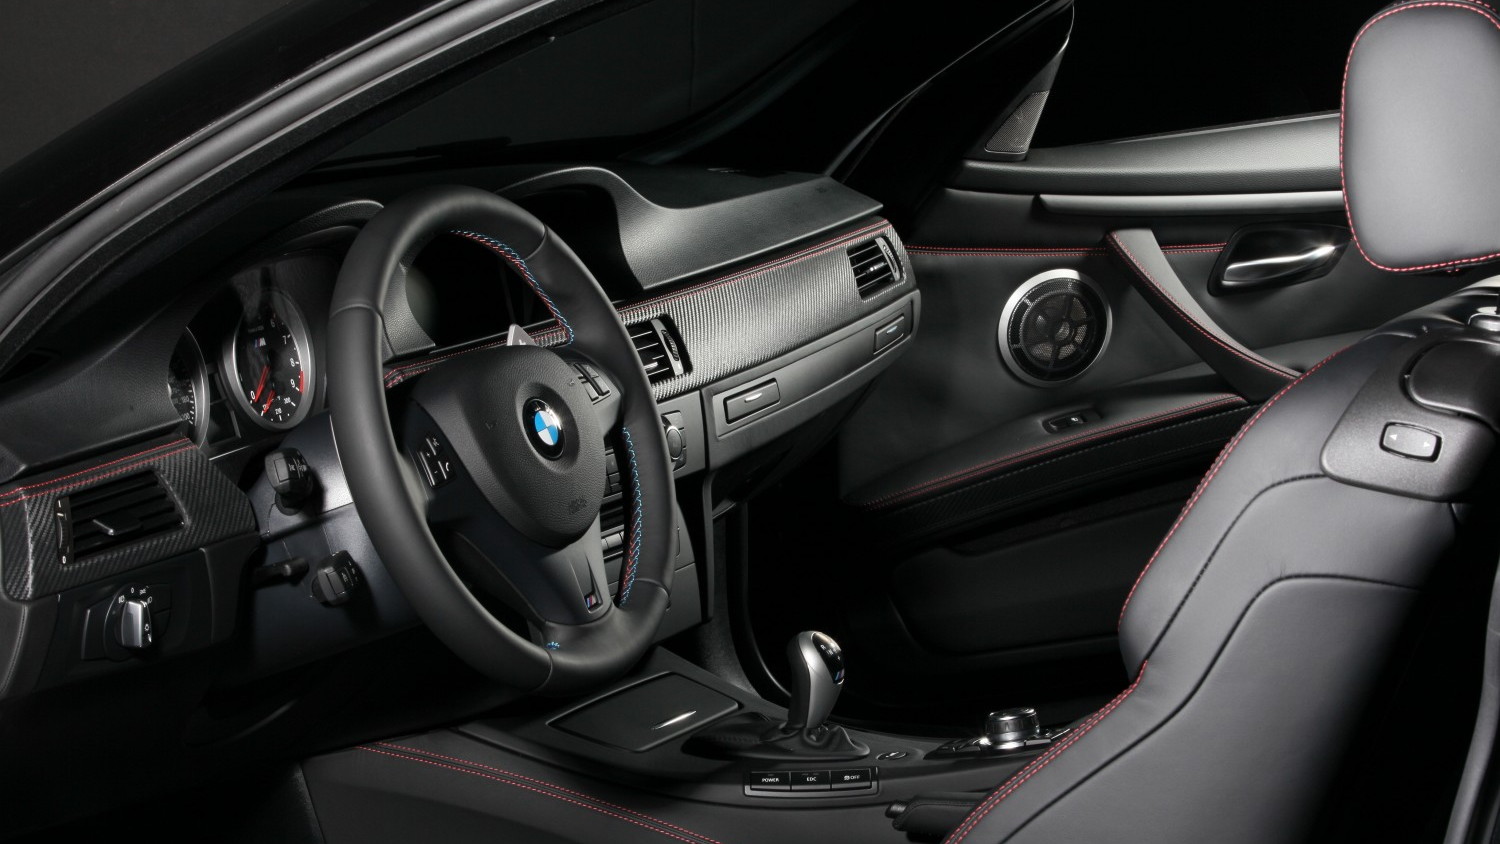 BMW's Frozen Black M3 Coupe. Image: BMW 